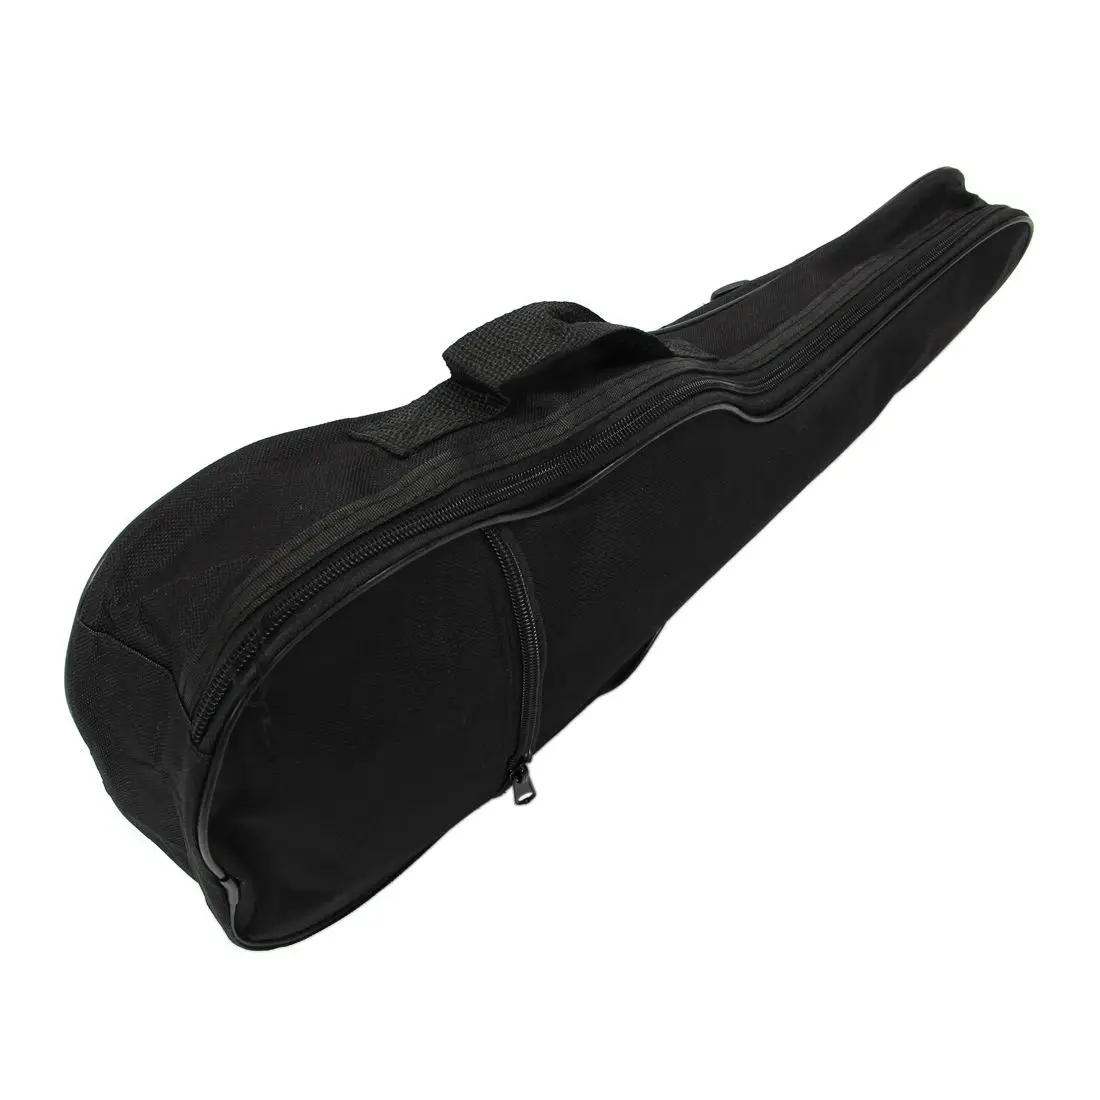 Шьет подробные сведения о миниатюрная гитара укулеле мягкий удобный плечевой Back Carry чехол сумка с черного цвета с ремешками для подарка